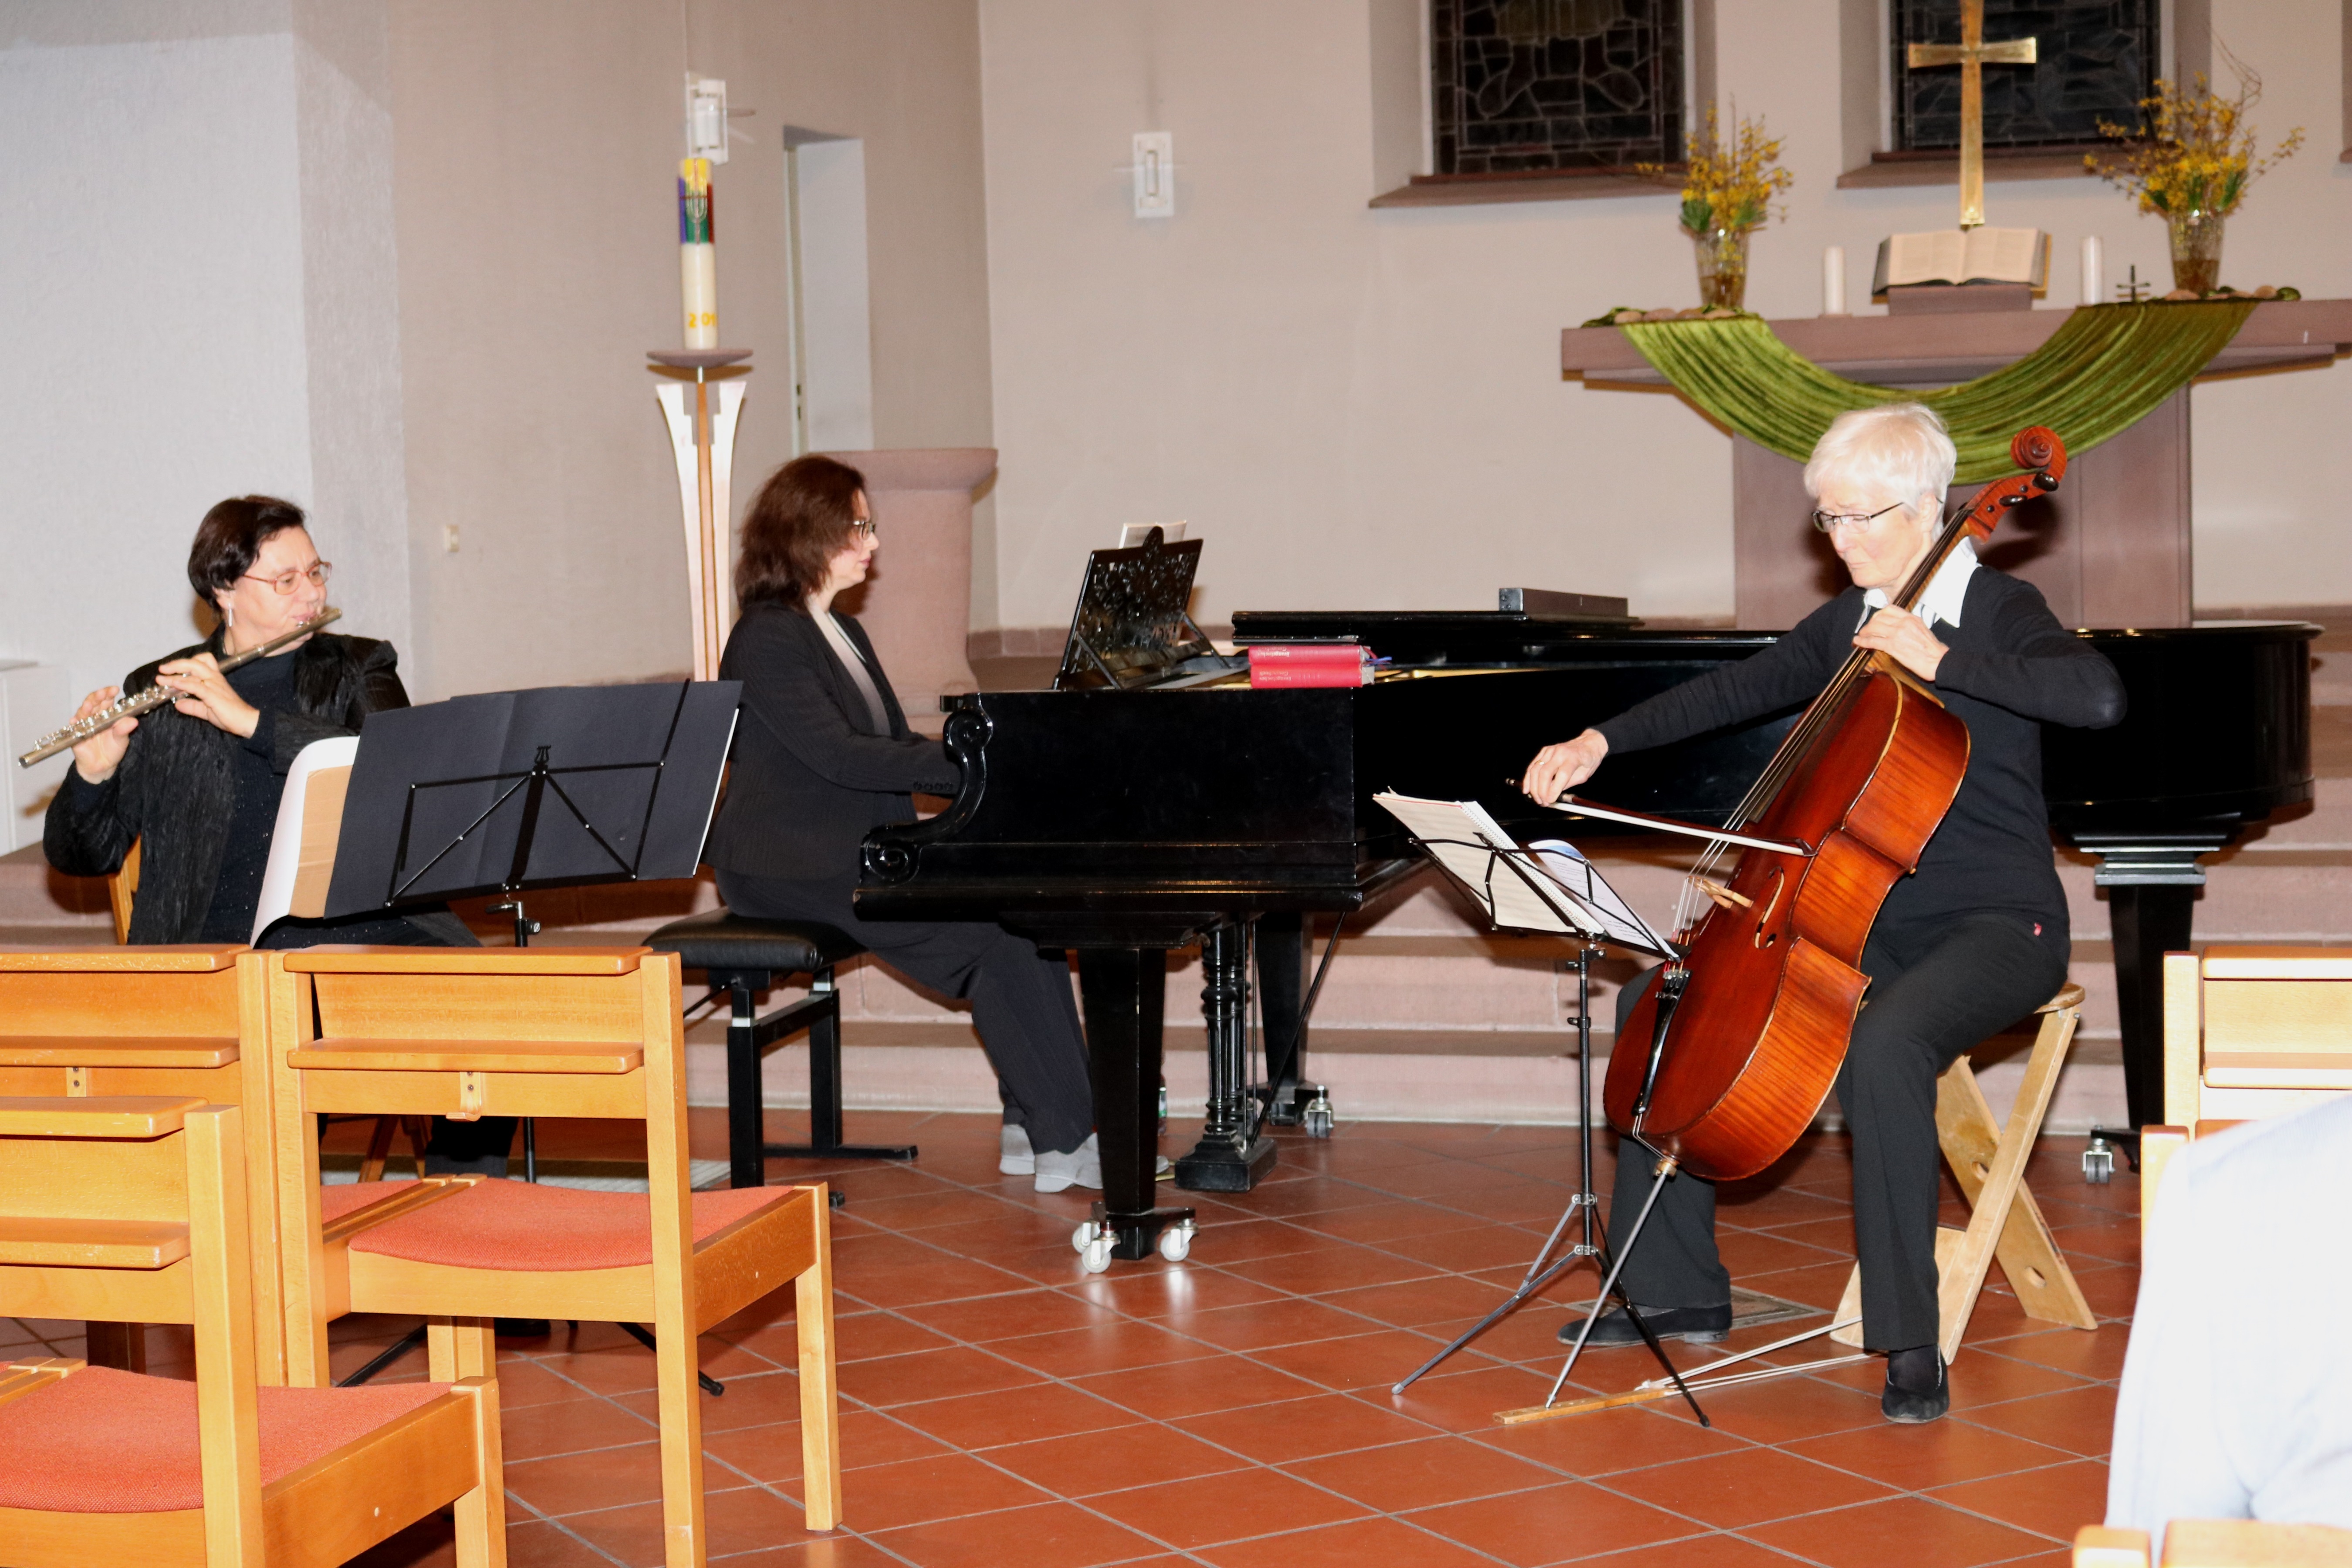  Das "Iris-Trio" spielte im Kleinen Konzert: Susanne Böttcher (Querflöte), Inna Lorgin (Klavier) und Mettilt Kasassoglou (Cello) 